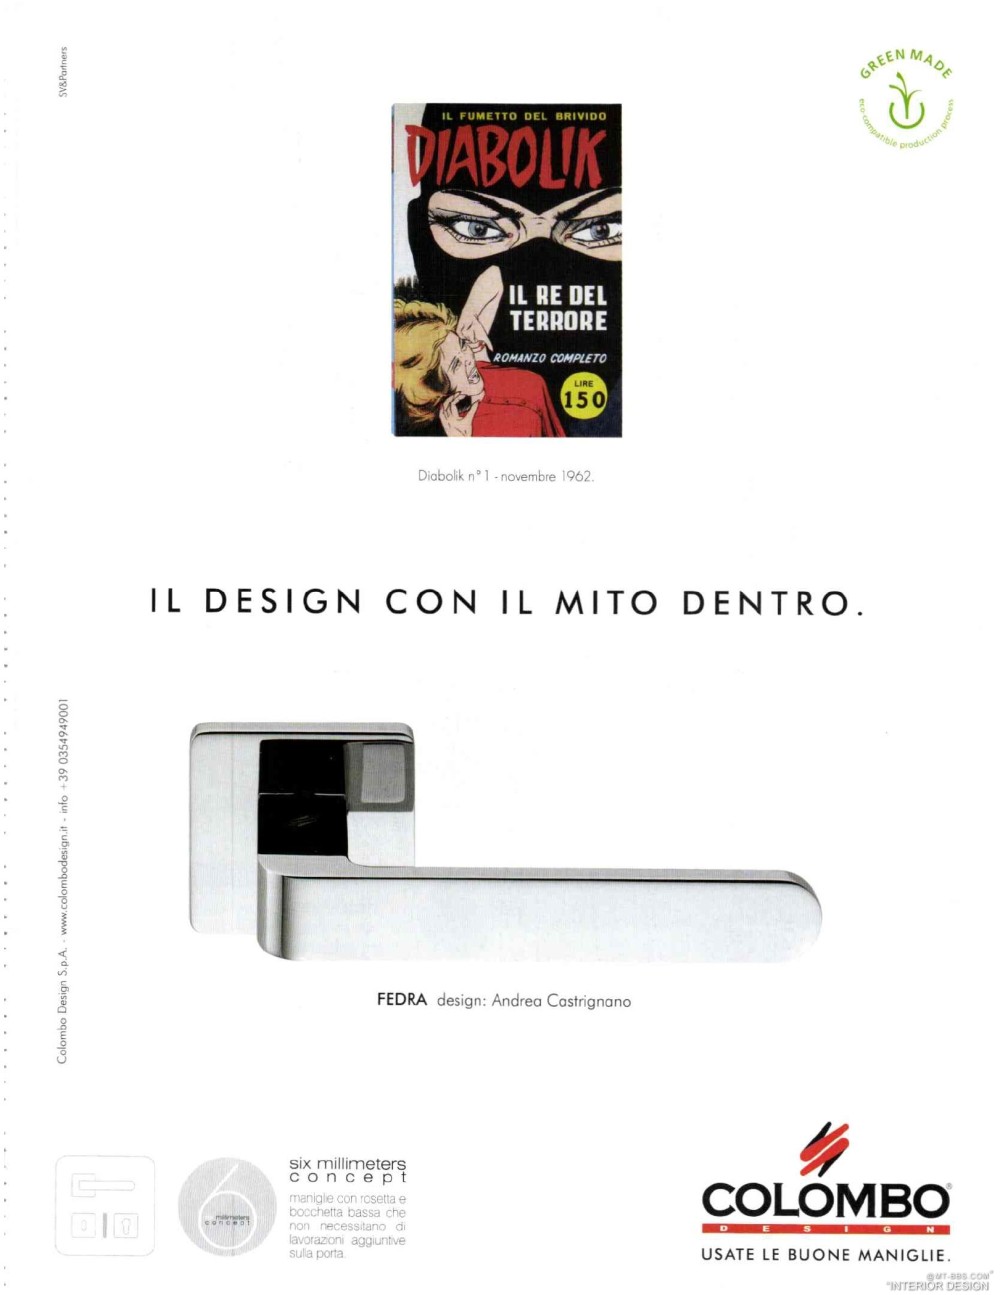 意大利AD 杂志 2012年全年JPG高清版本 全免（上传完毕）_0051.jpg